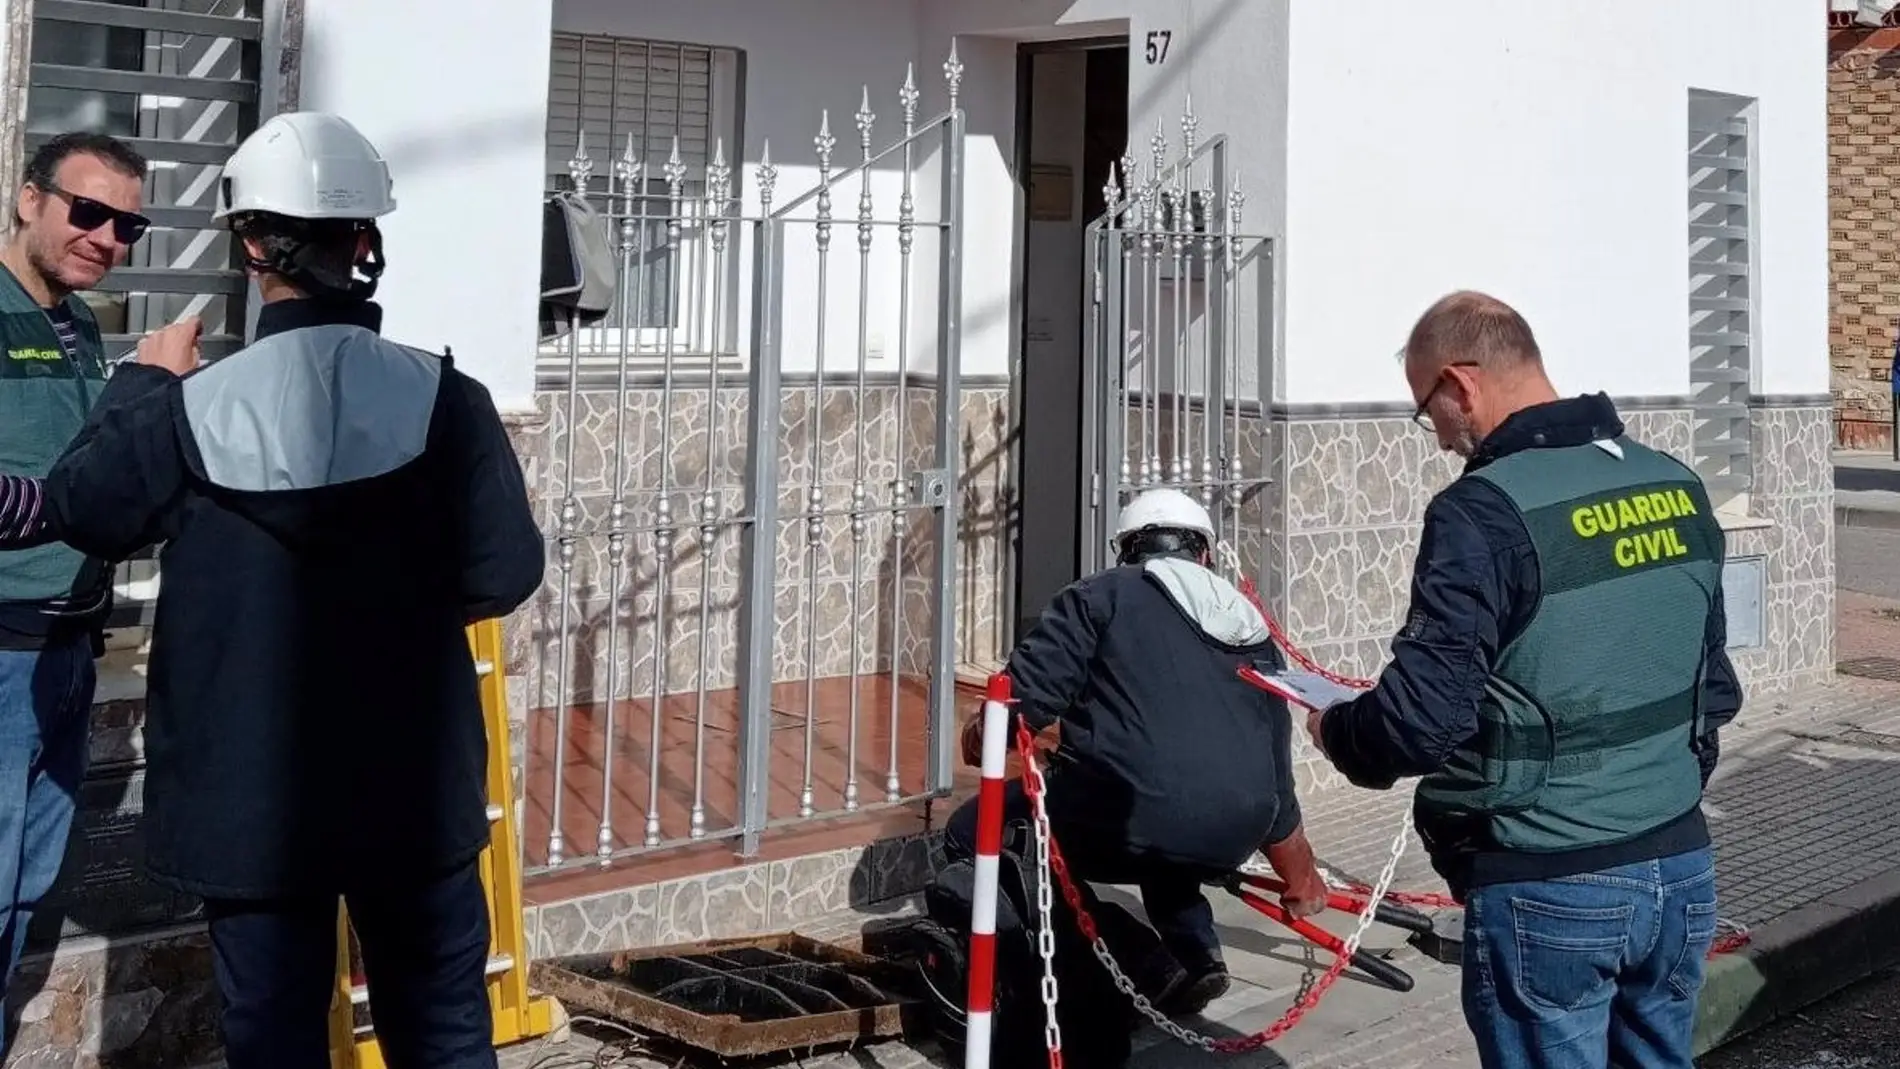 Investigadas 42 personas en Alcolea por 35 viviendas y un bar con "enganches" ilegales de electricidad